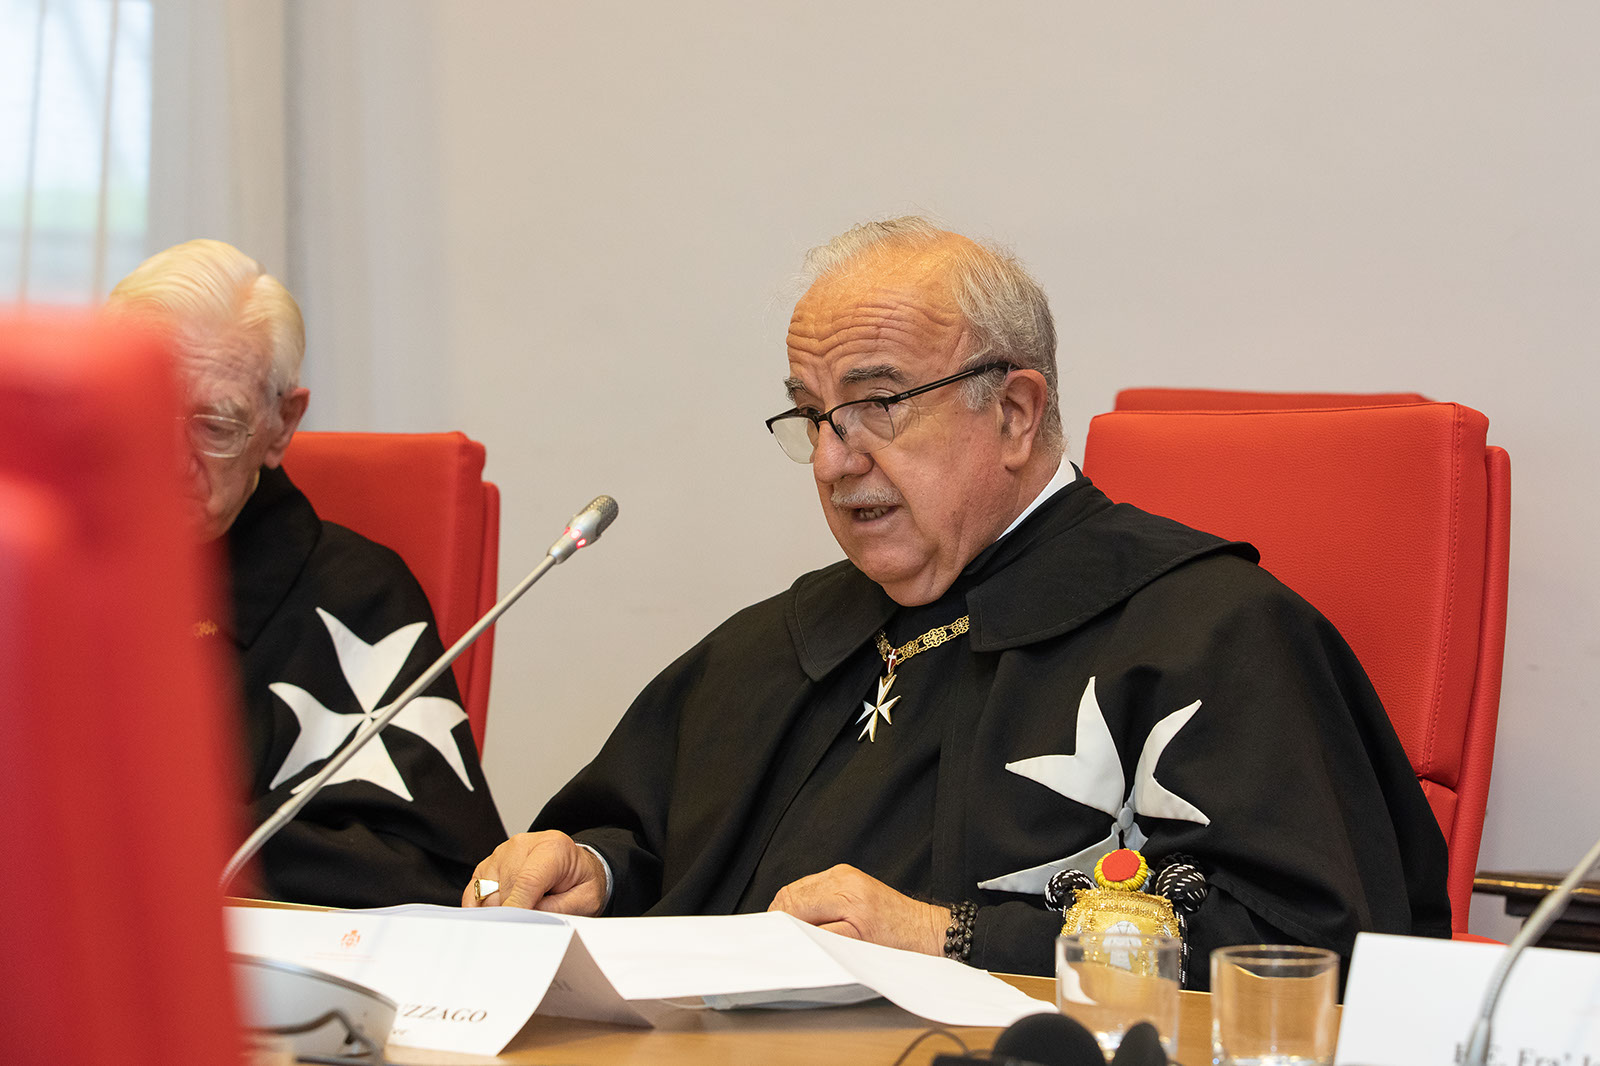 Cardinal Tomasi meets Professed members